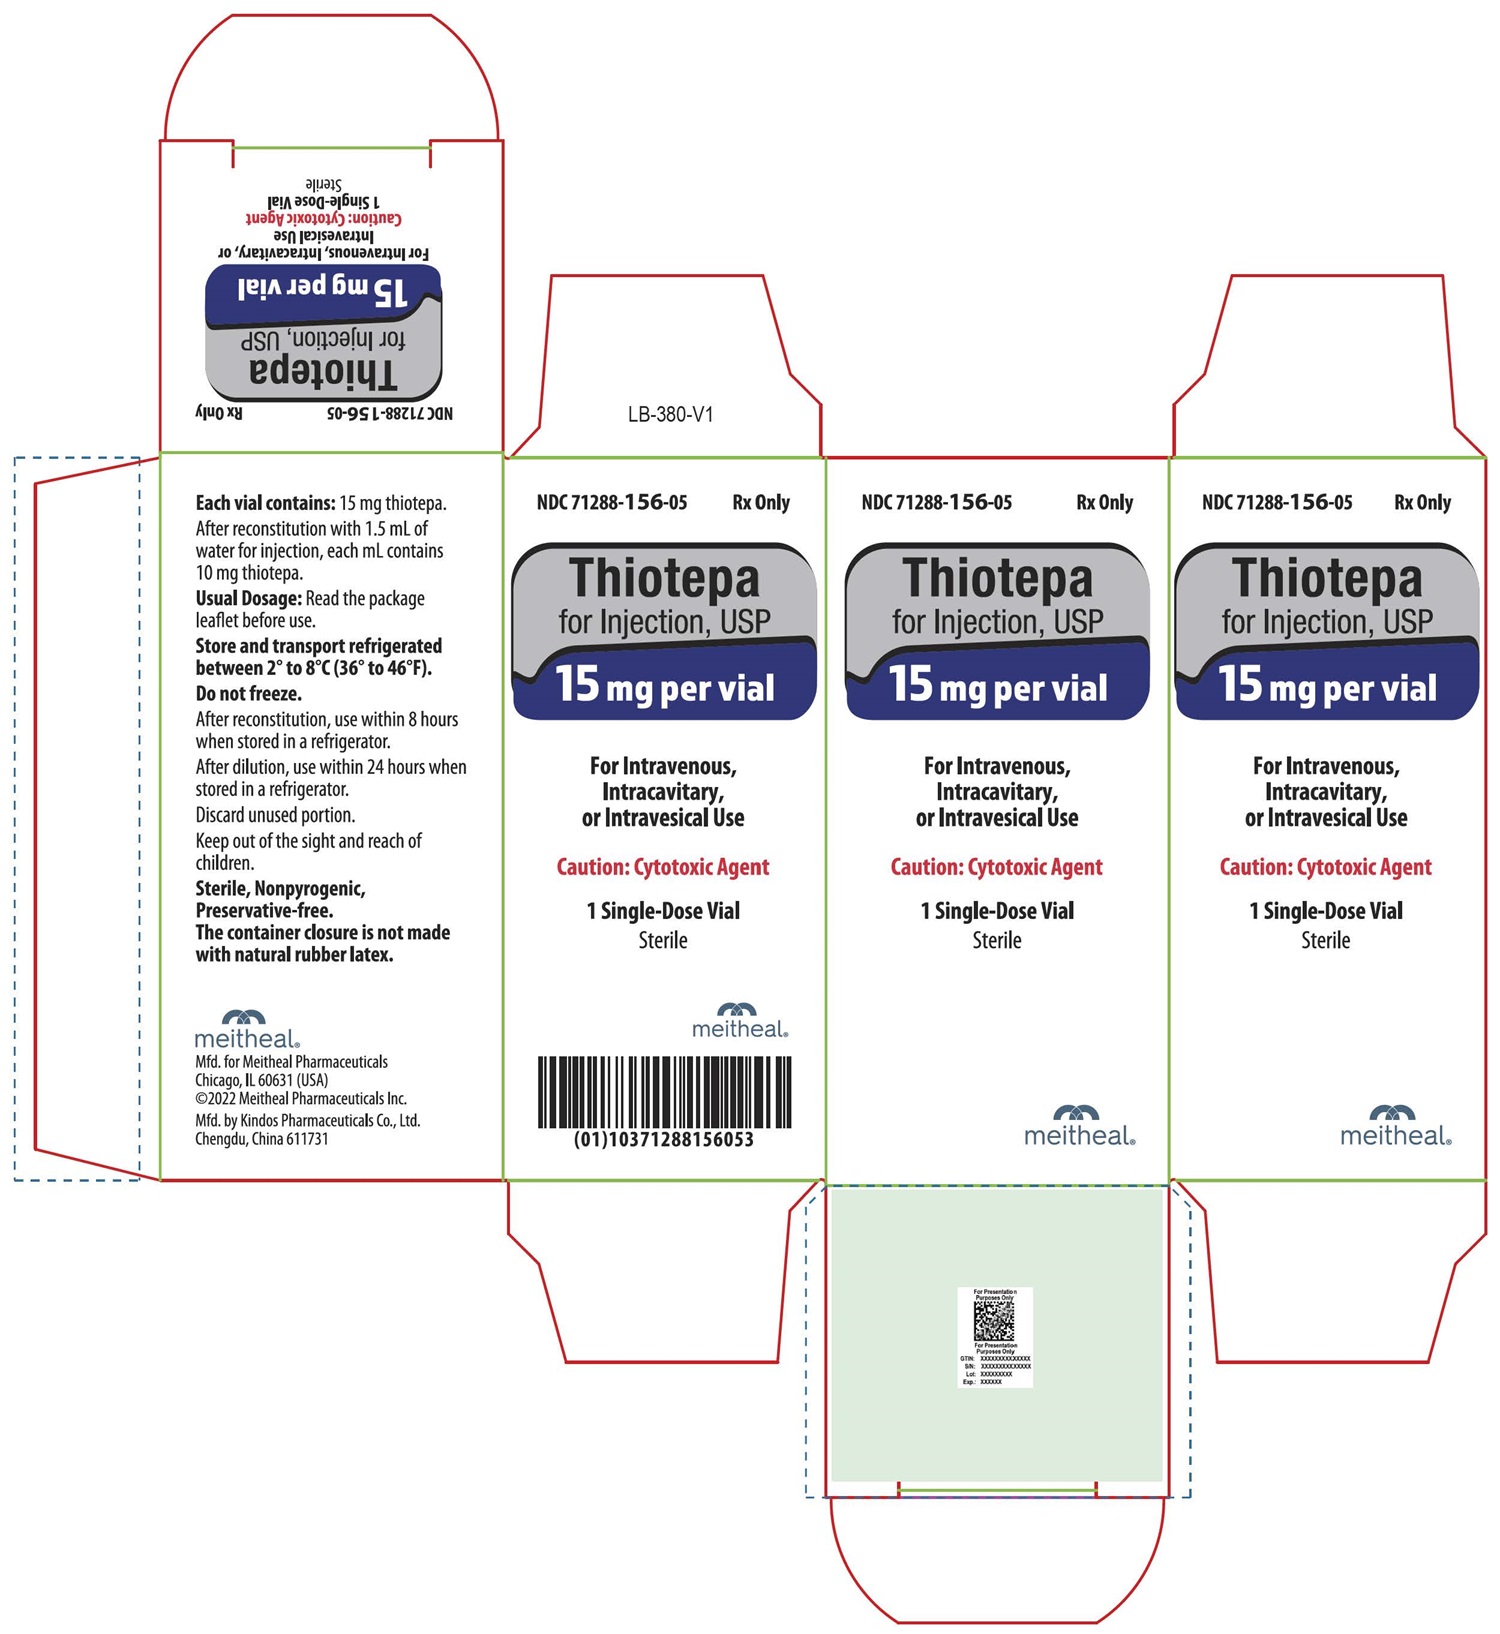 PRINCIPAL DISPLAY PANEL – Thiotepa for Injection, USP 15 mg Carton